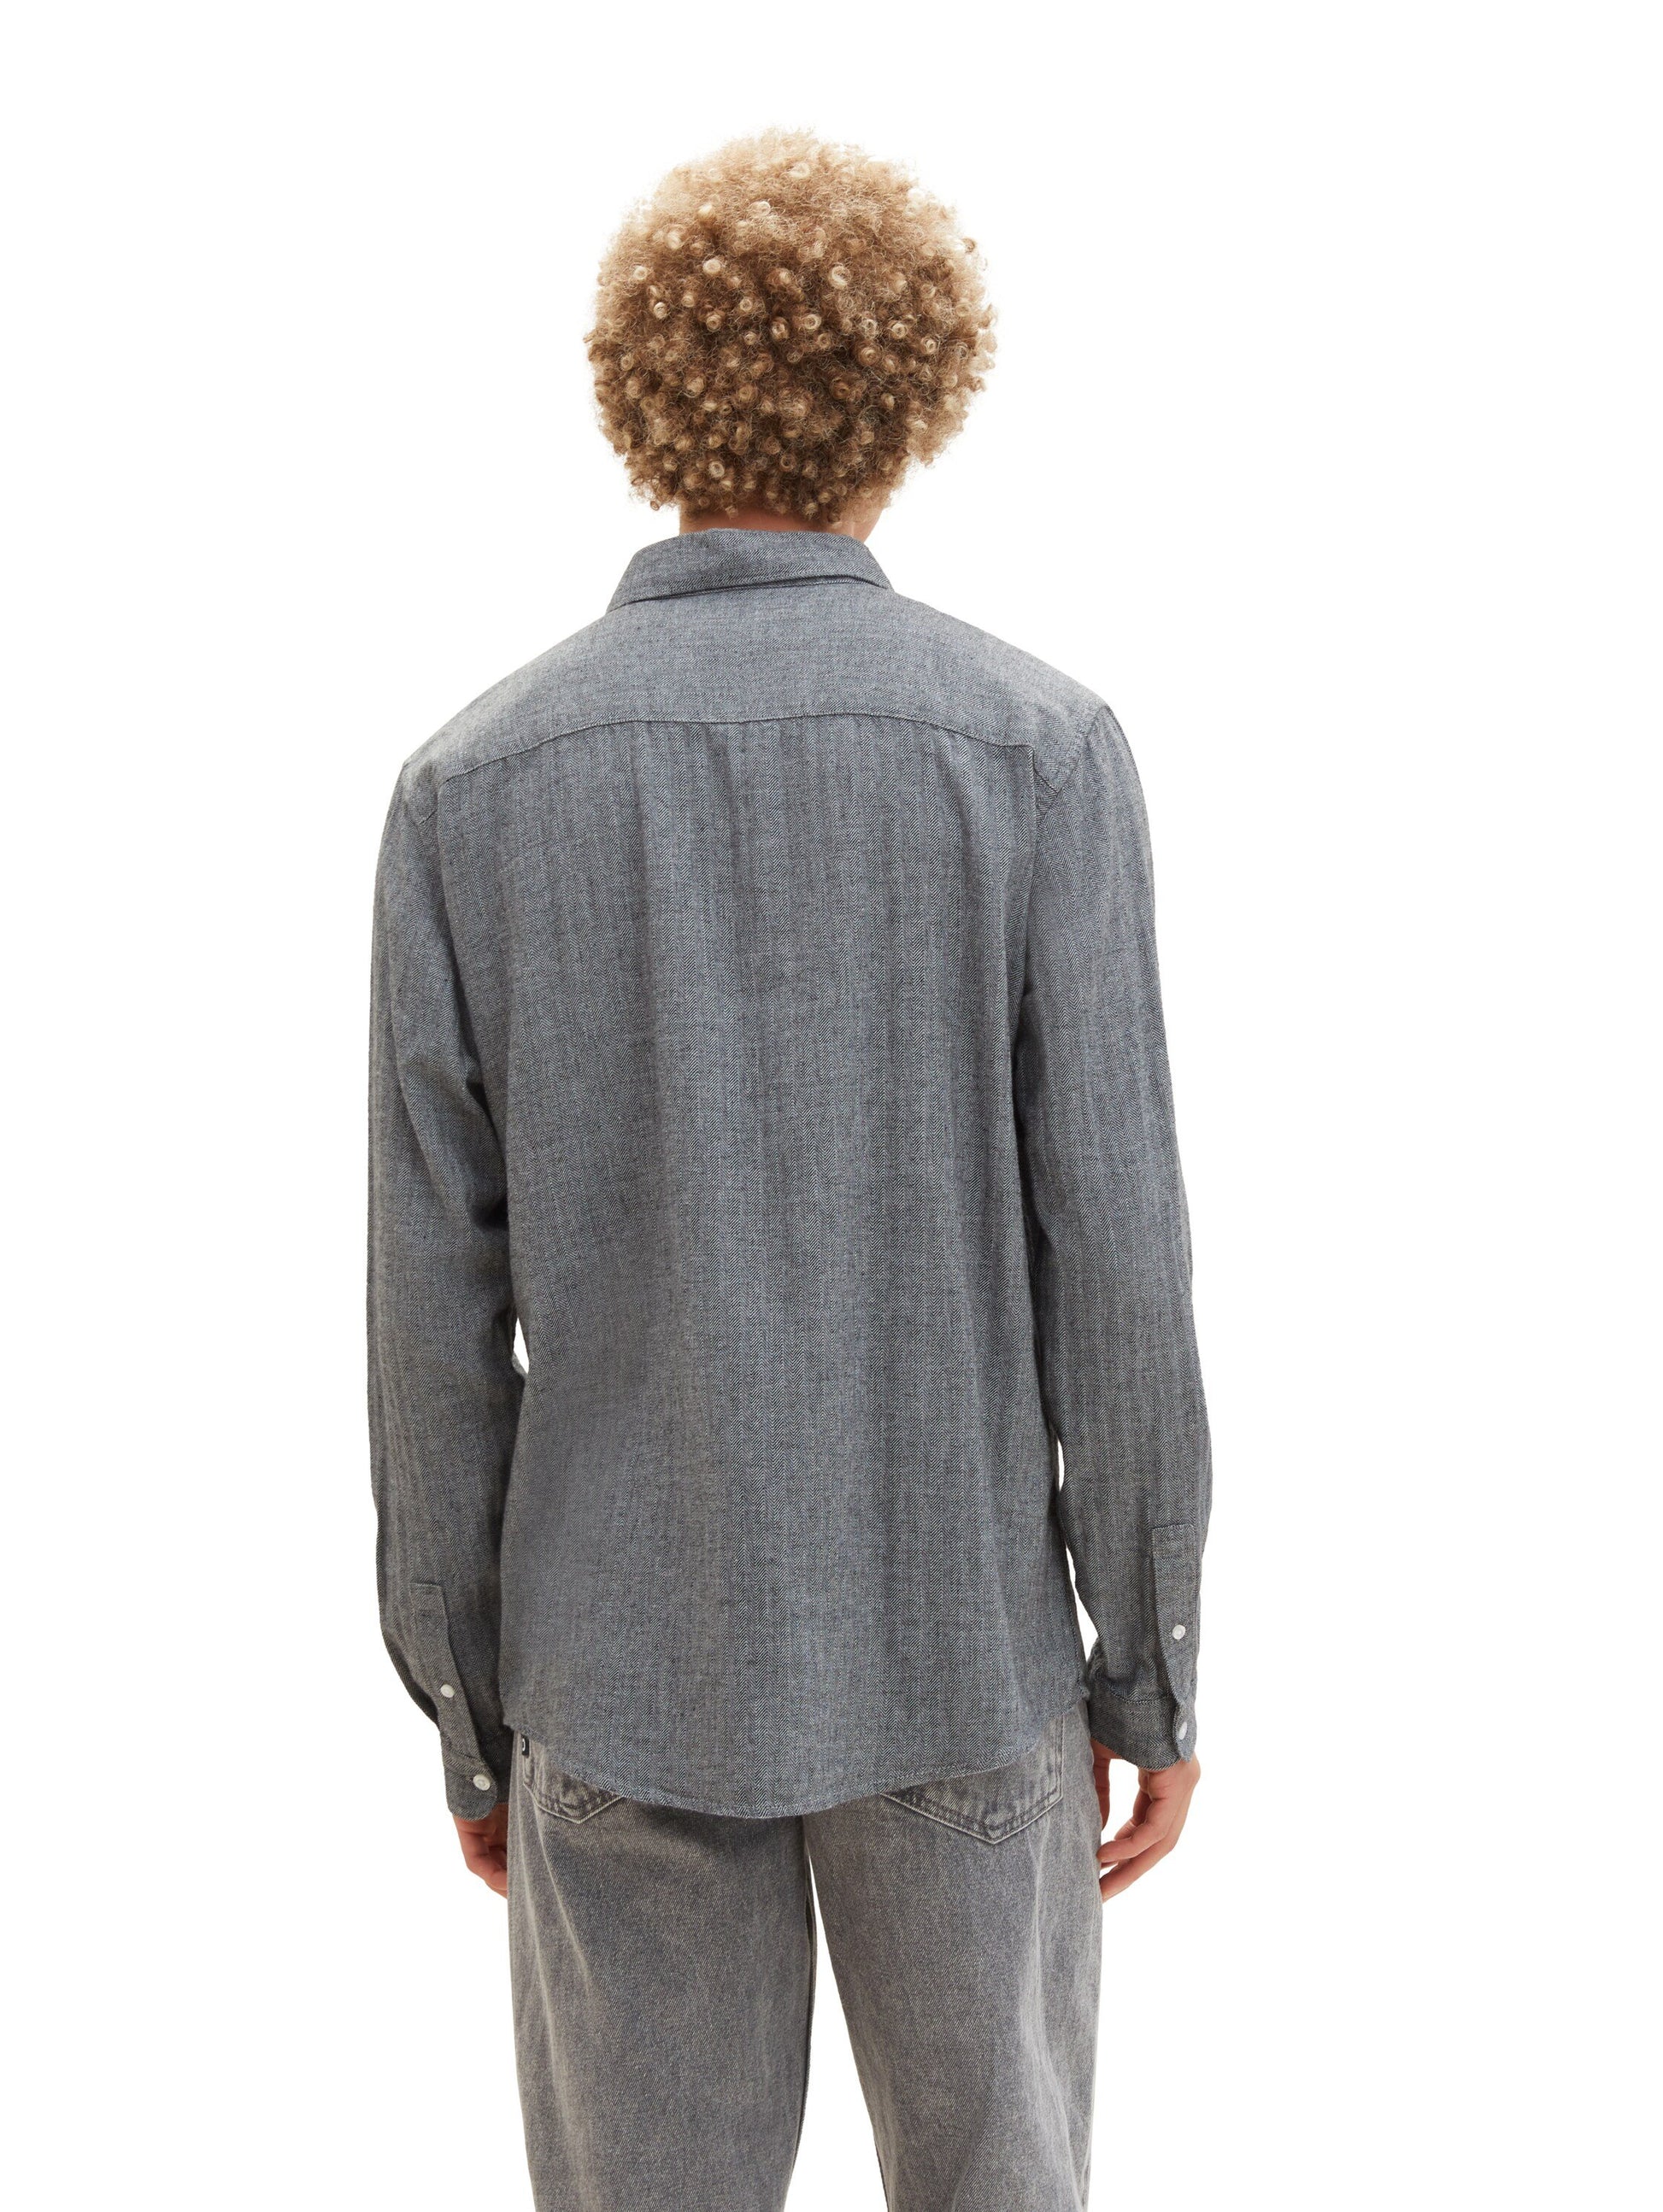 Blum-Jundt – Modehaus herringbone shirt